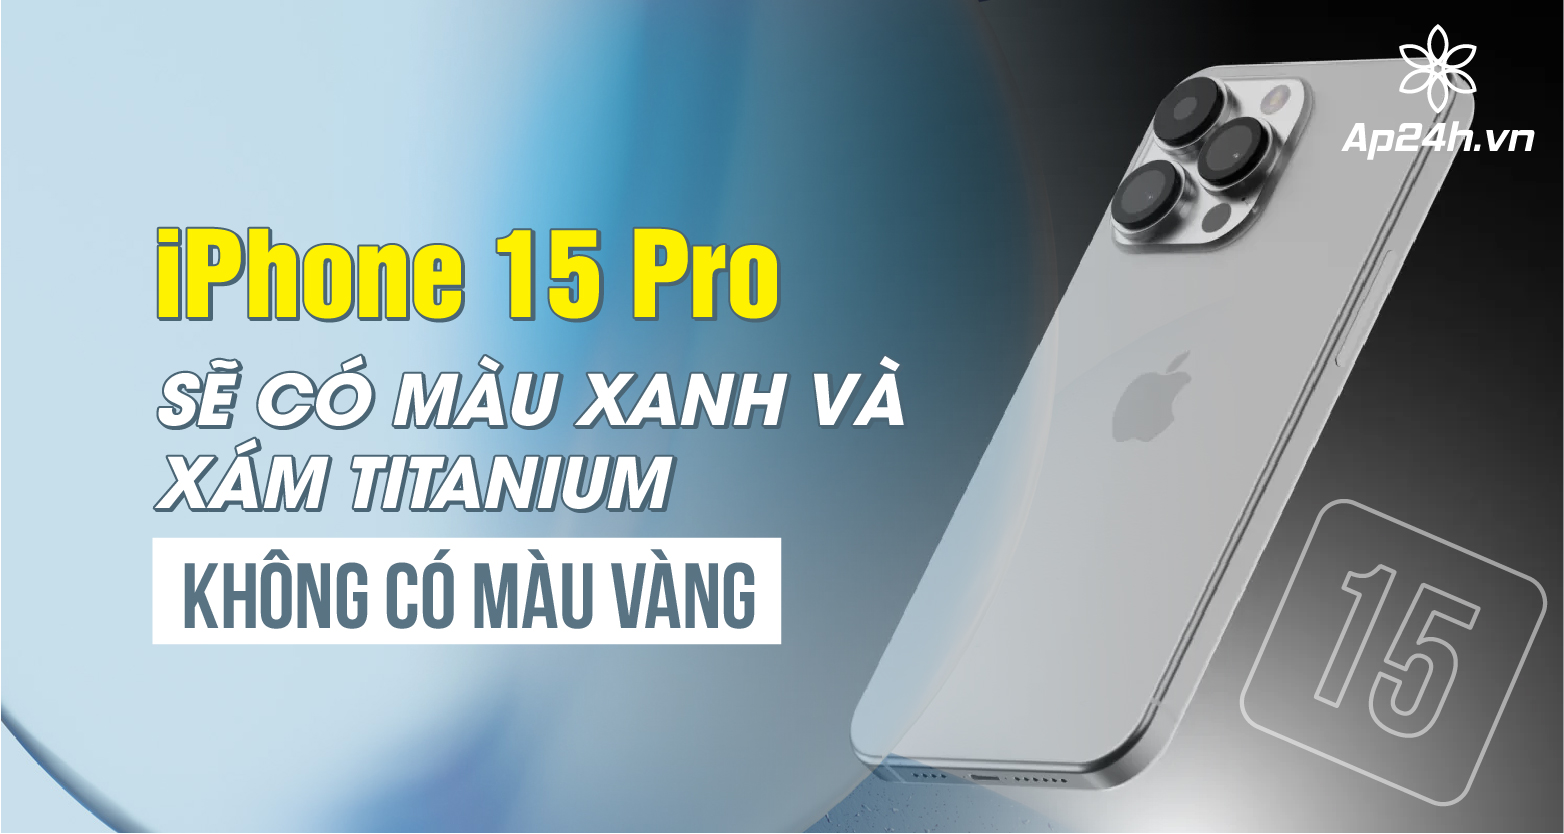  iPhone 15 Pro sẽ không có màu xanh và xám titanium, không có màu vàng